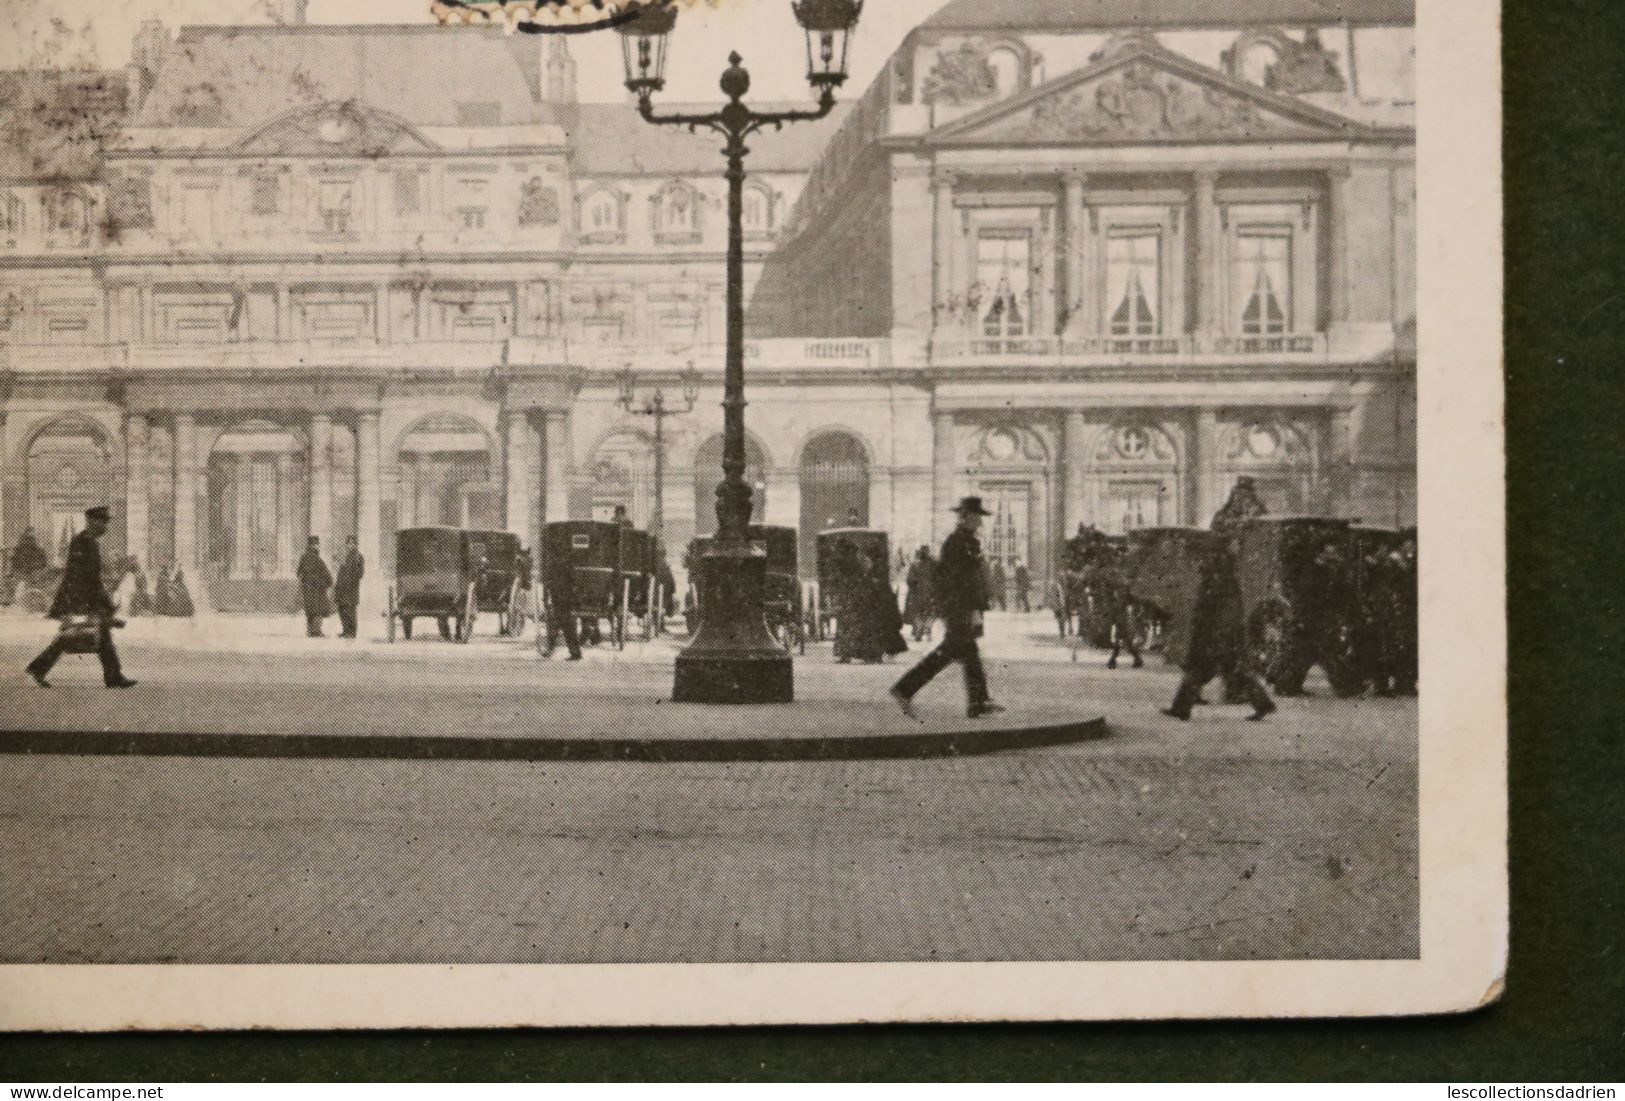 Carte Postale Paris Palais Royal Animée Calèches - Autres Monuments, édifices